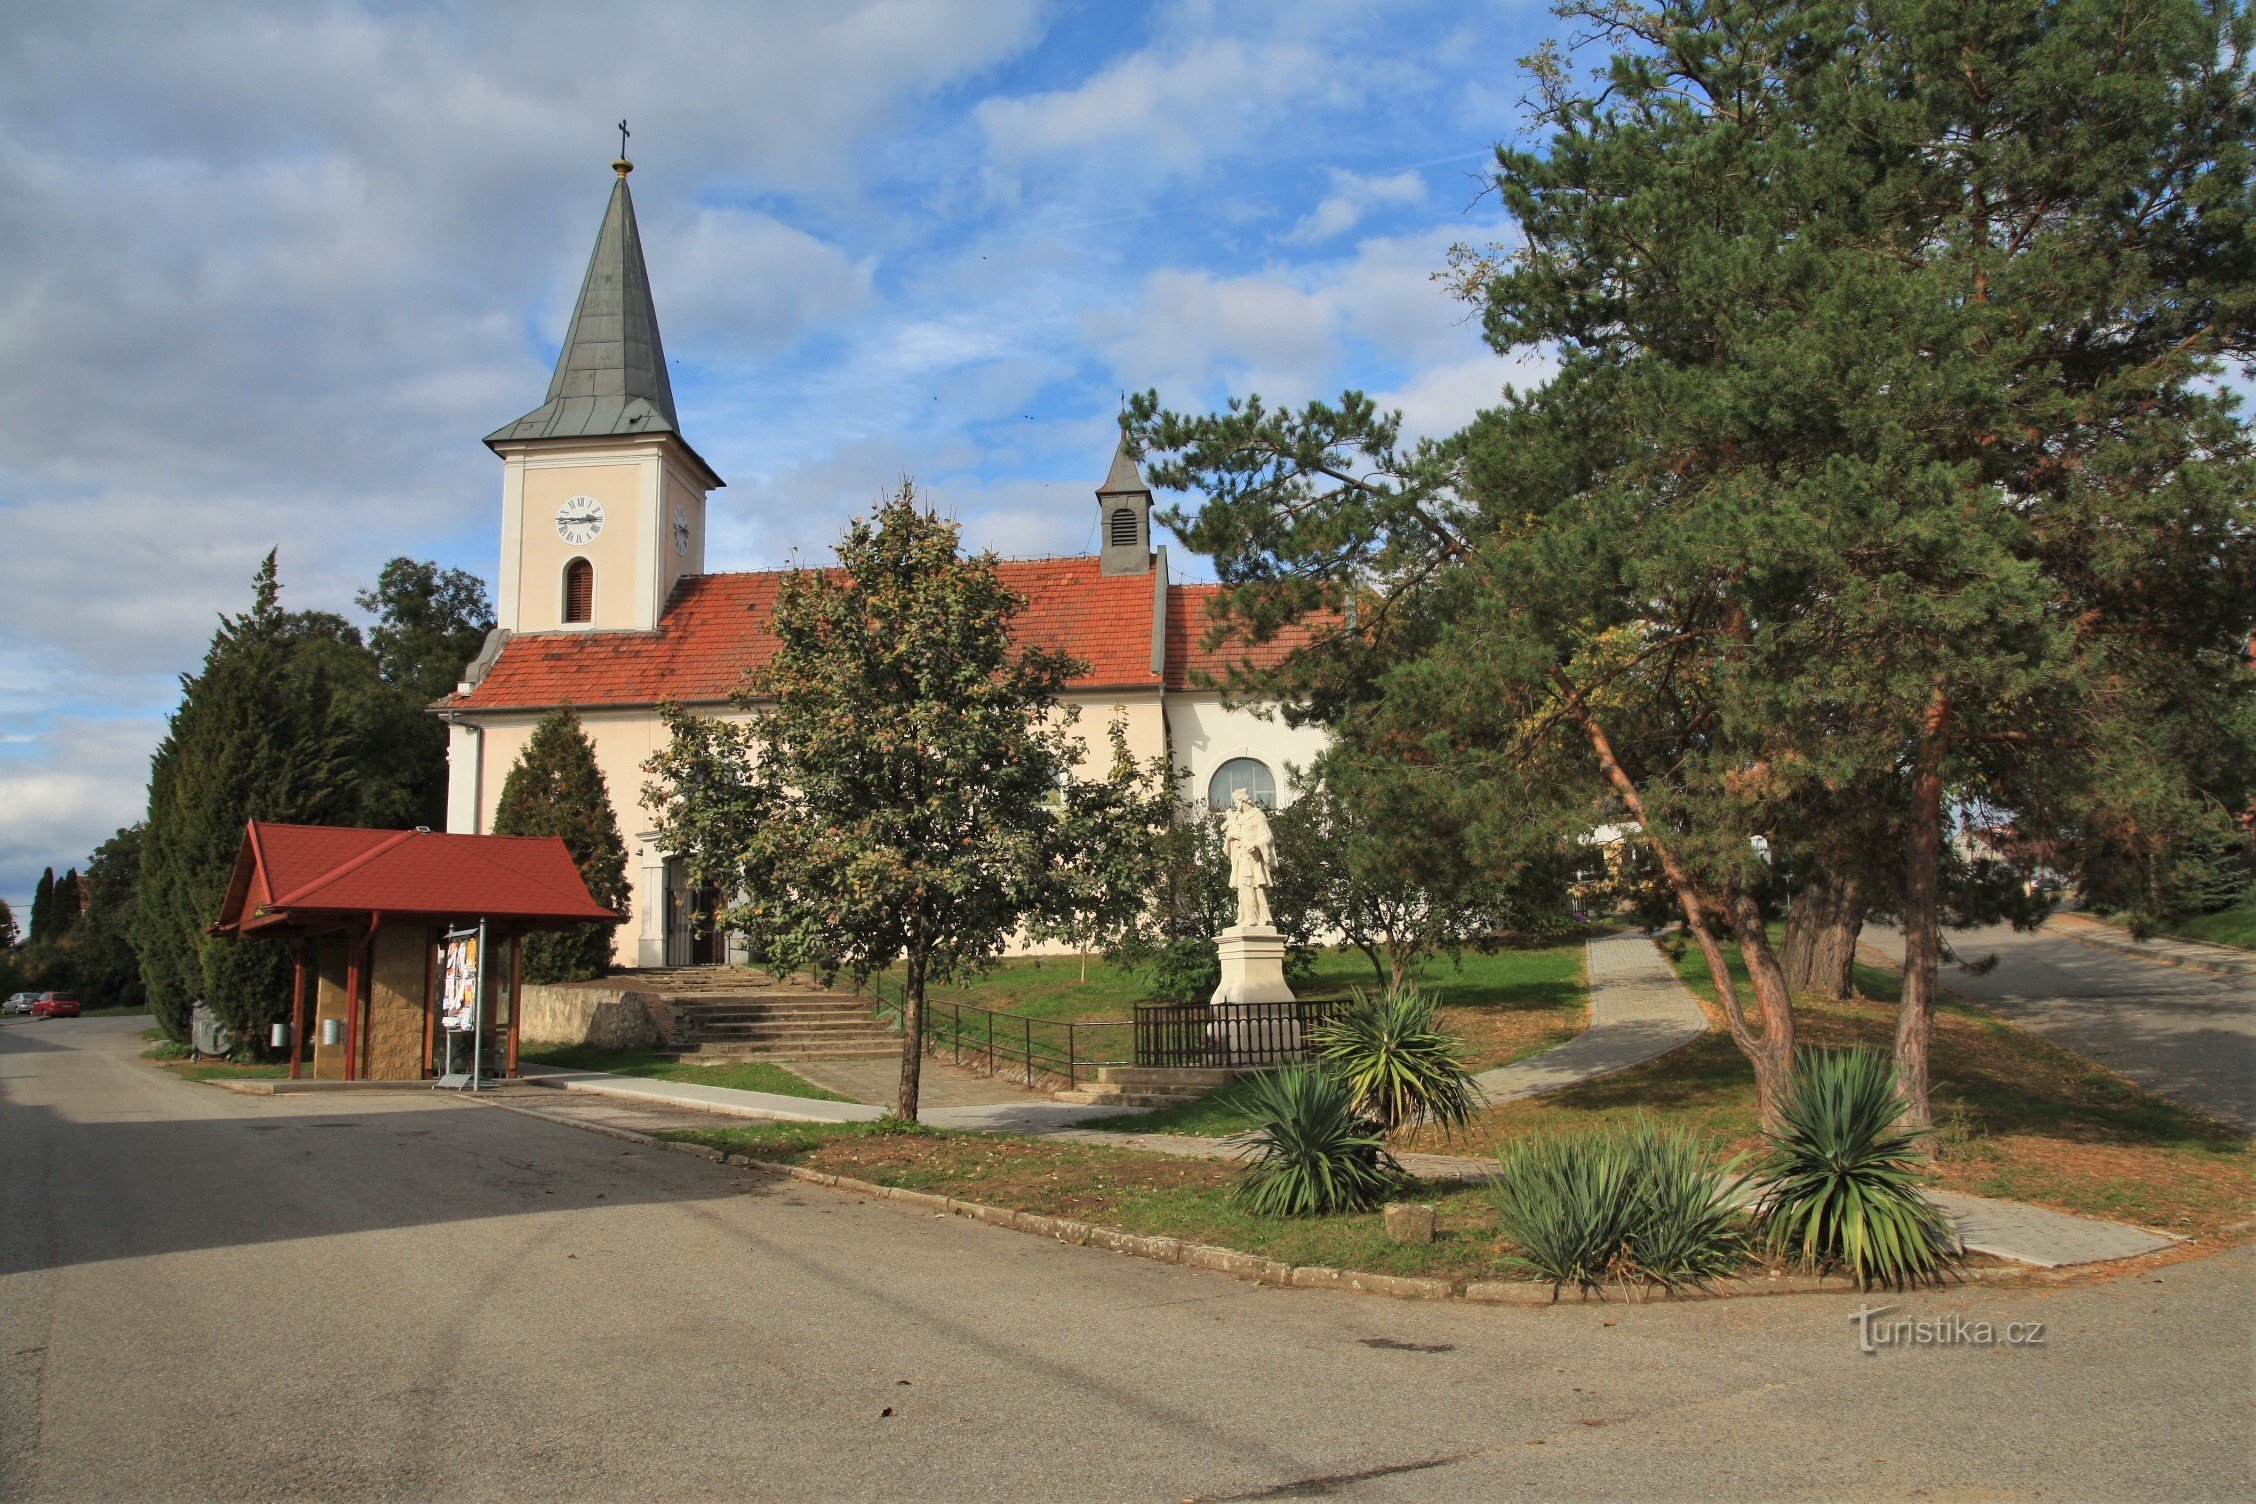 Над селом Прібіч домінує церква св. Івана Хрестителя